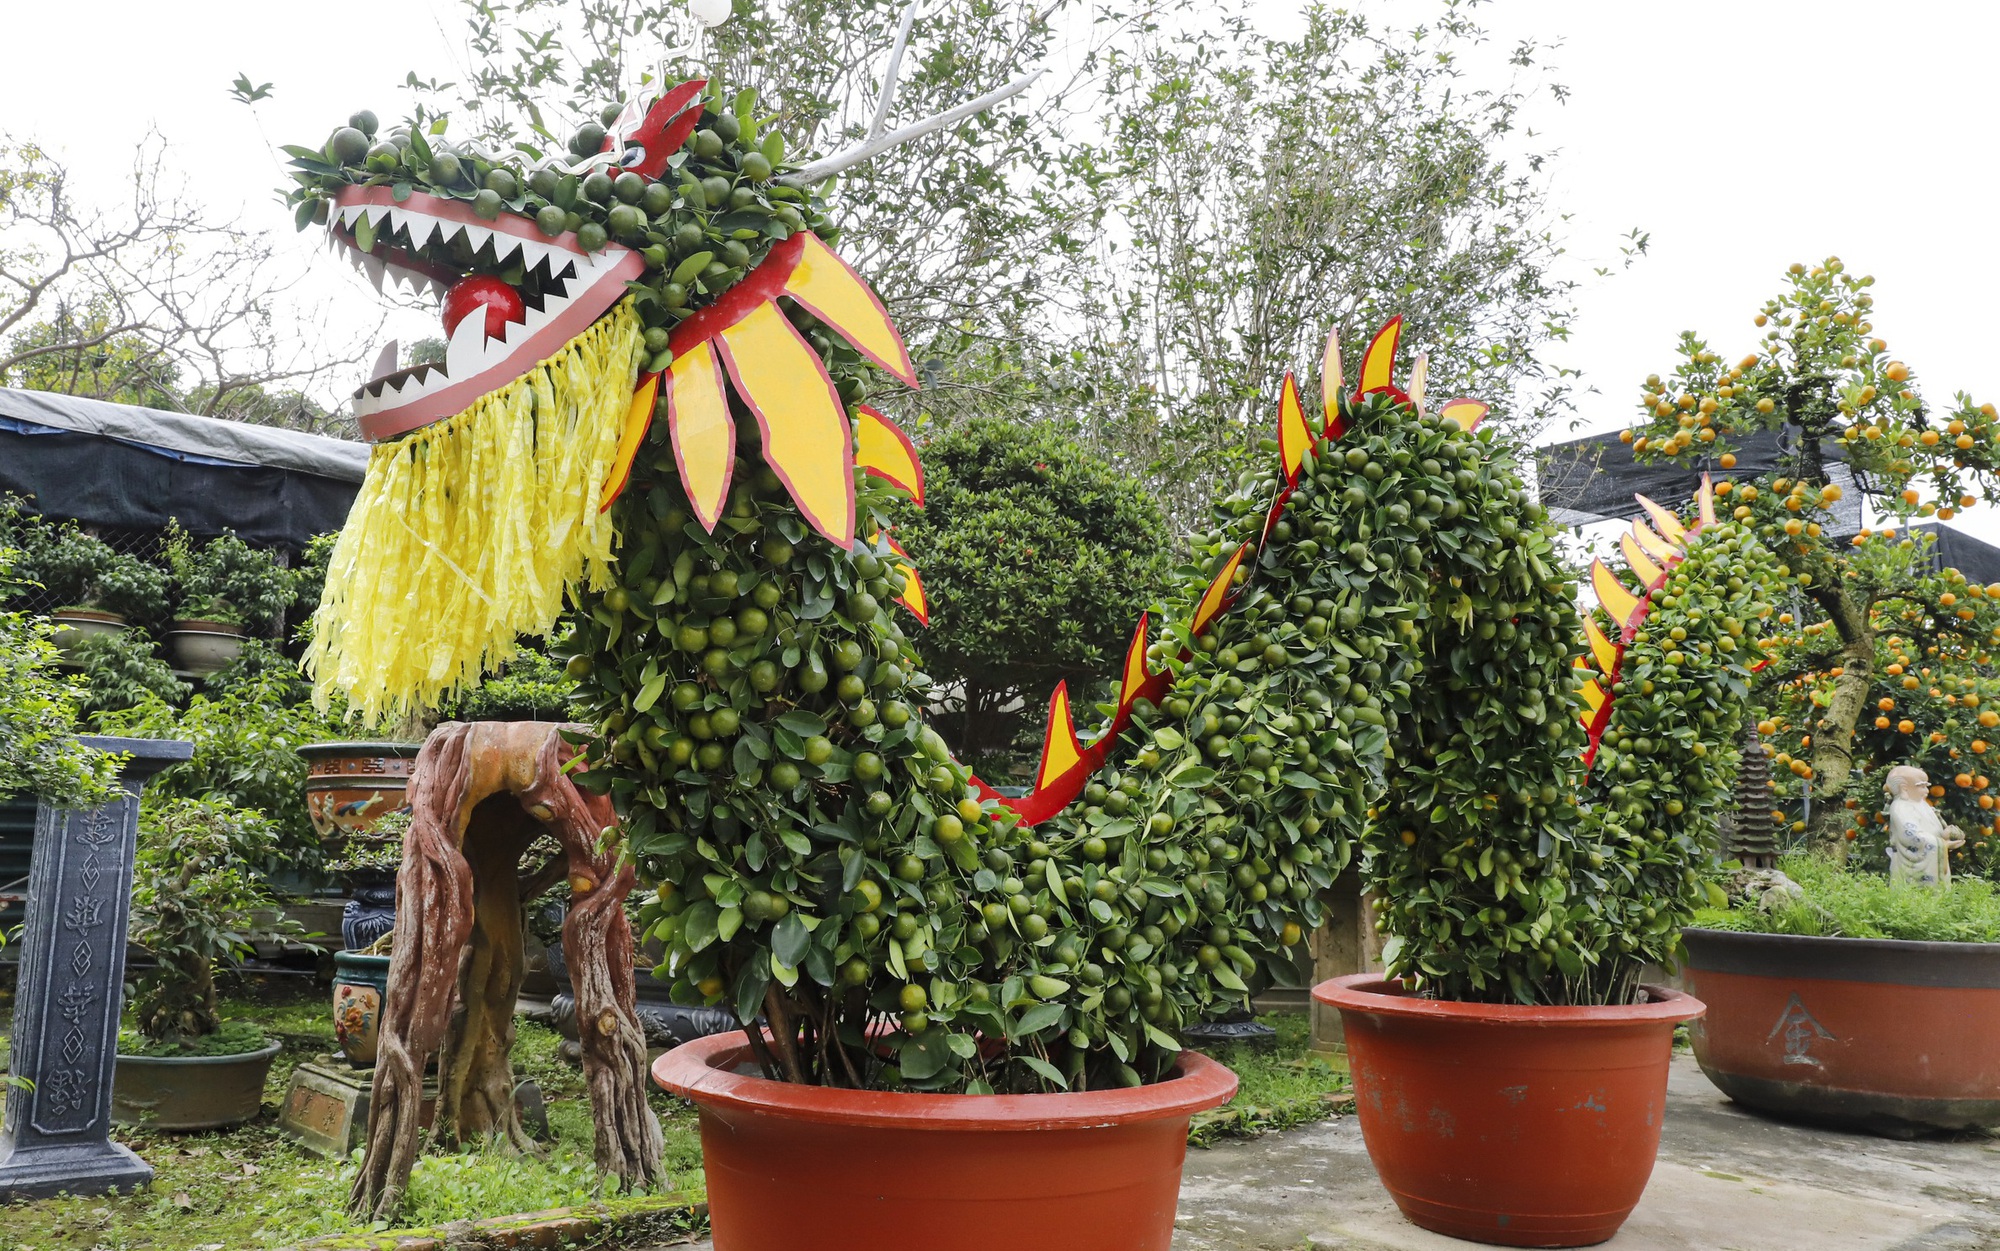 Mãn nhãn cặp rồng nằm “long vân thủy” làm từ 12 cây quất trả 100 triệu đồng chủ cũng không bán ở Hà Nội